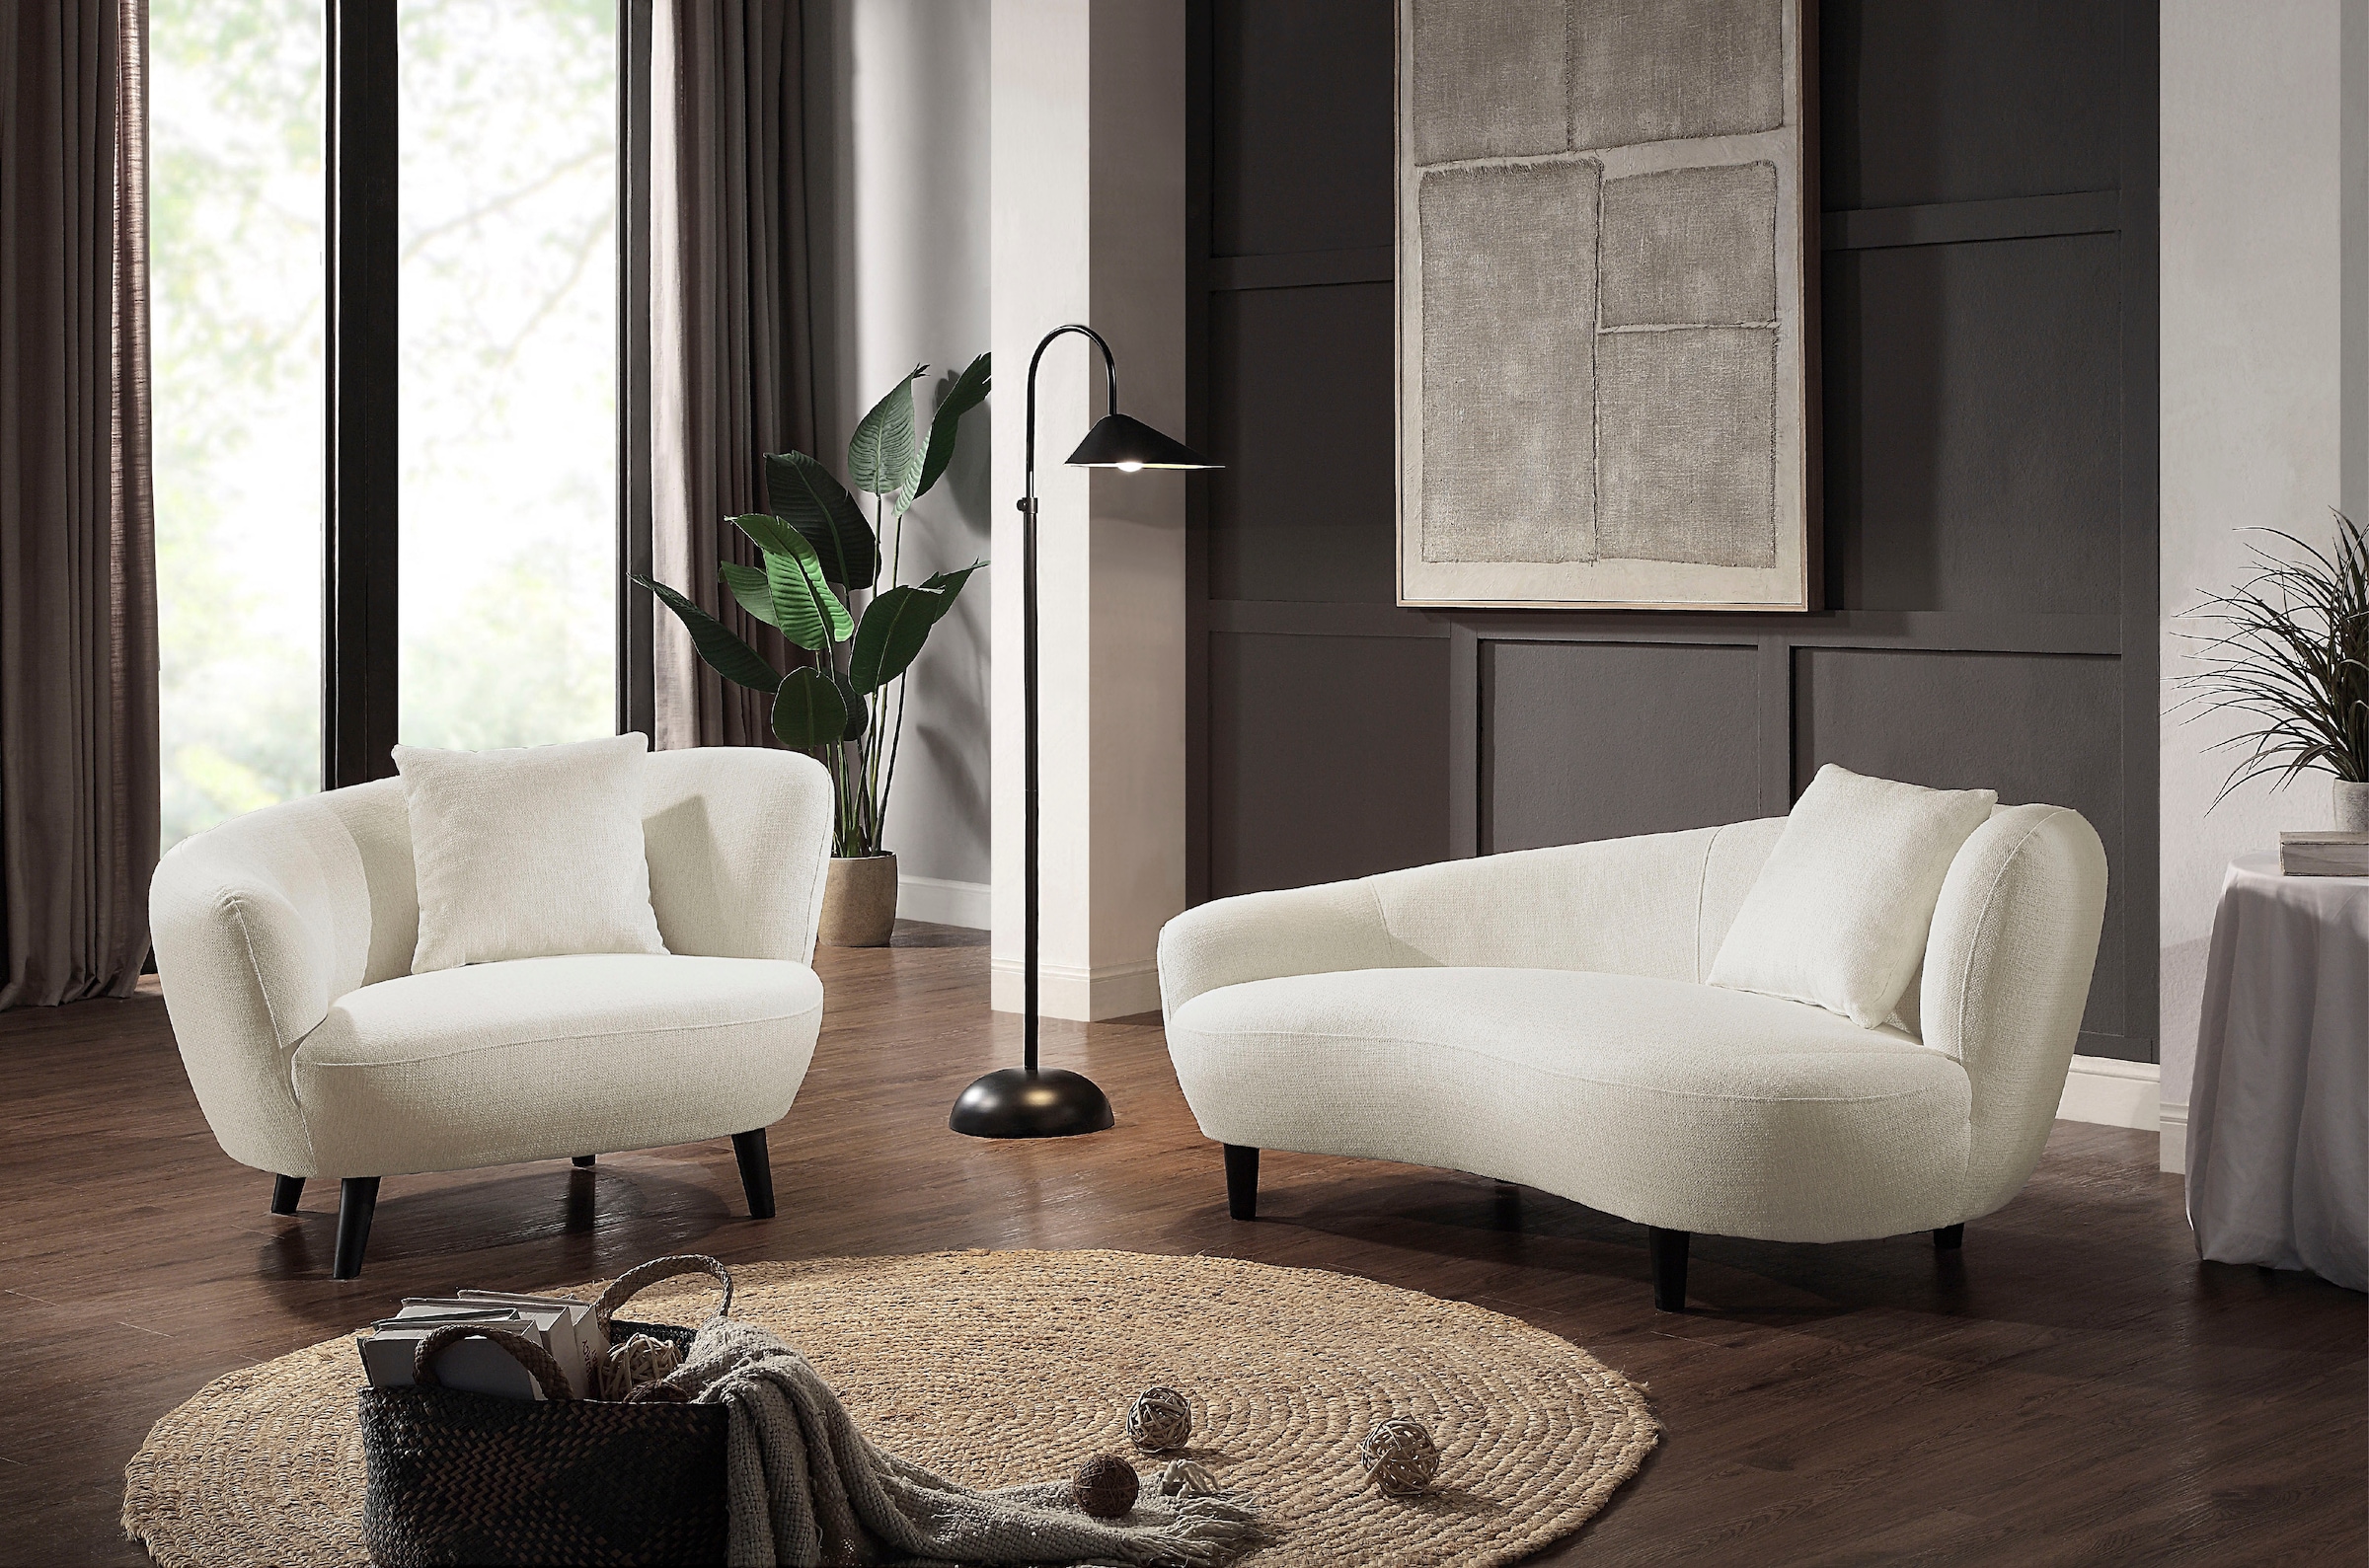 | Ackermann für Lounge-Sessel relaxte Stunden